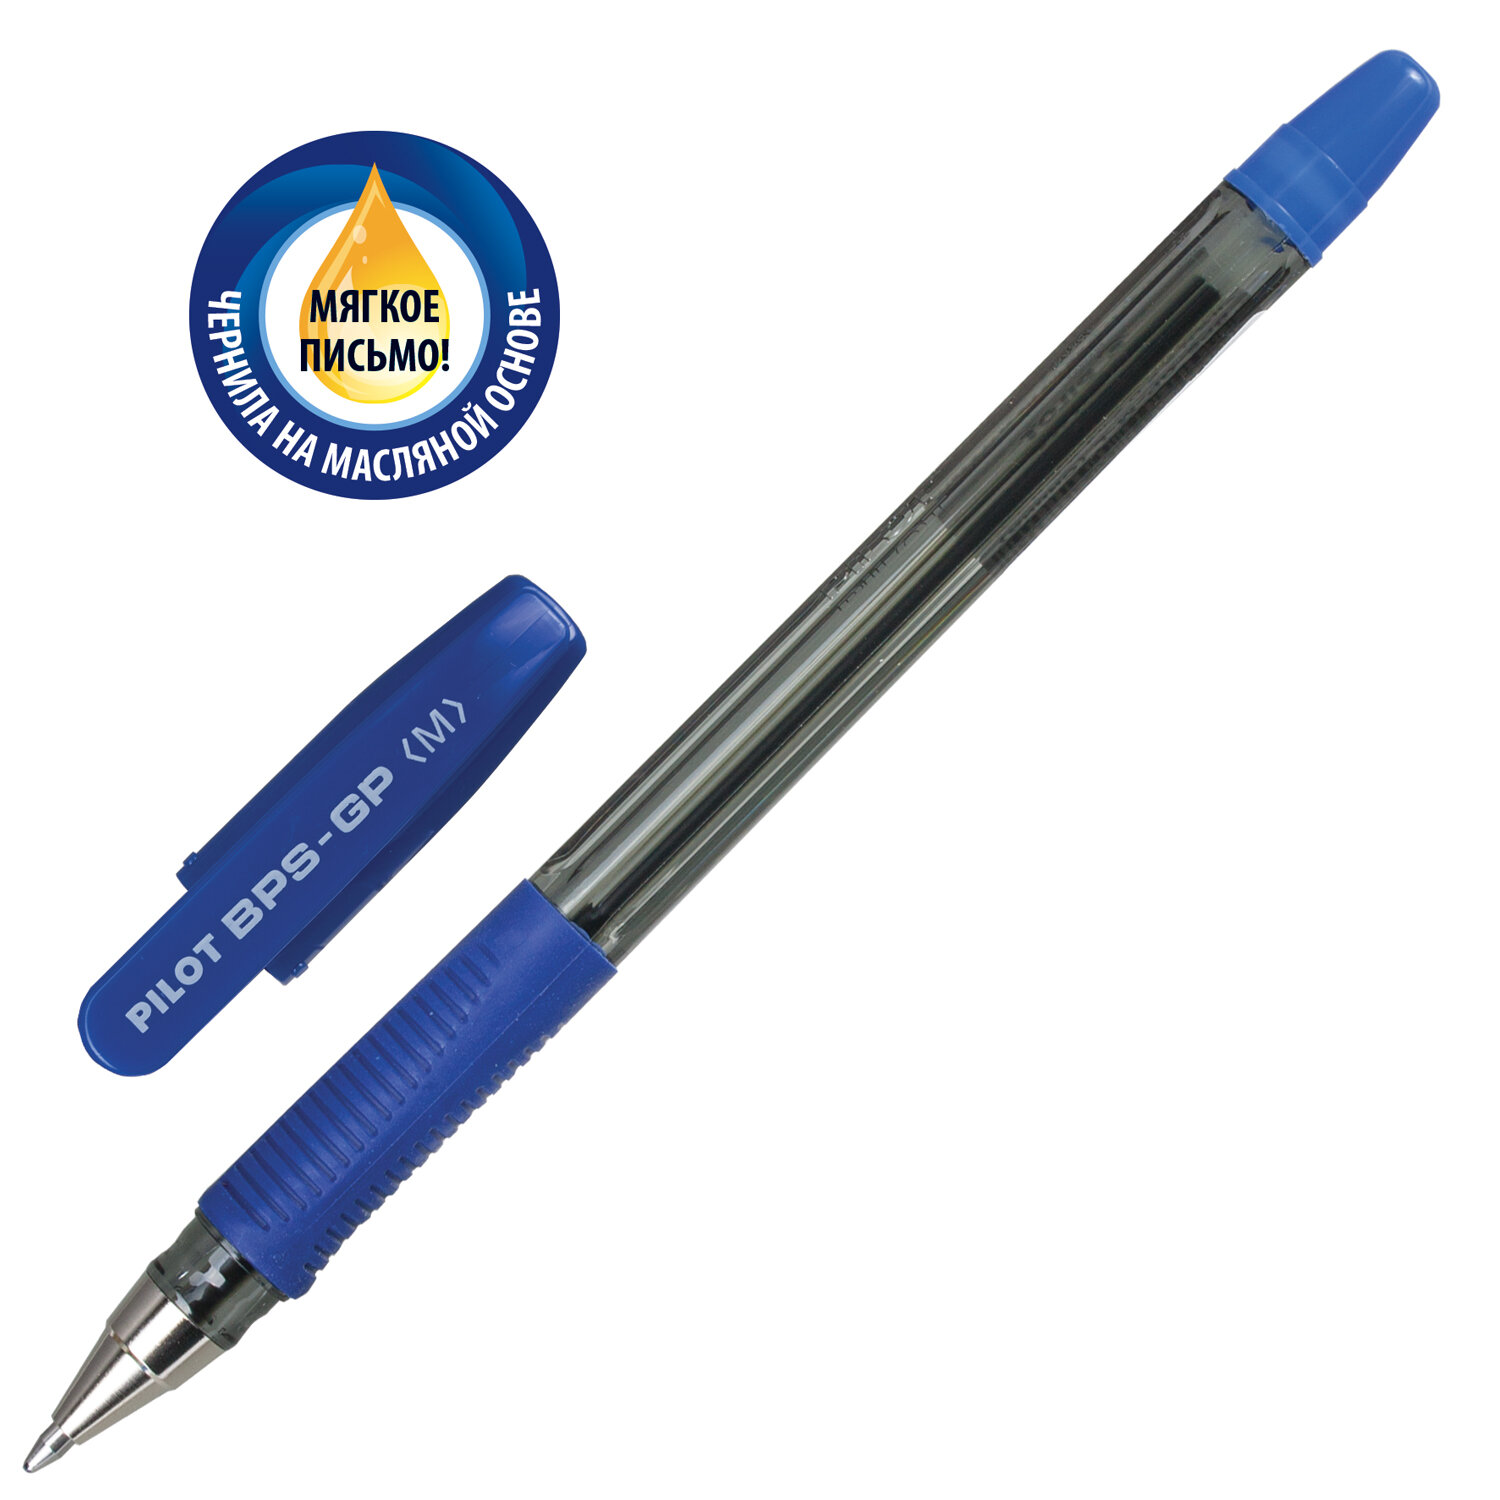 Ручки шариковые PILOT масляные синие набор 3 штуки - фото 7